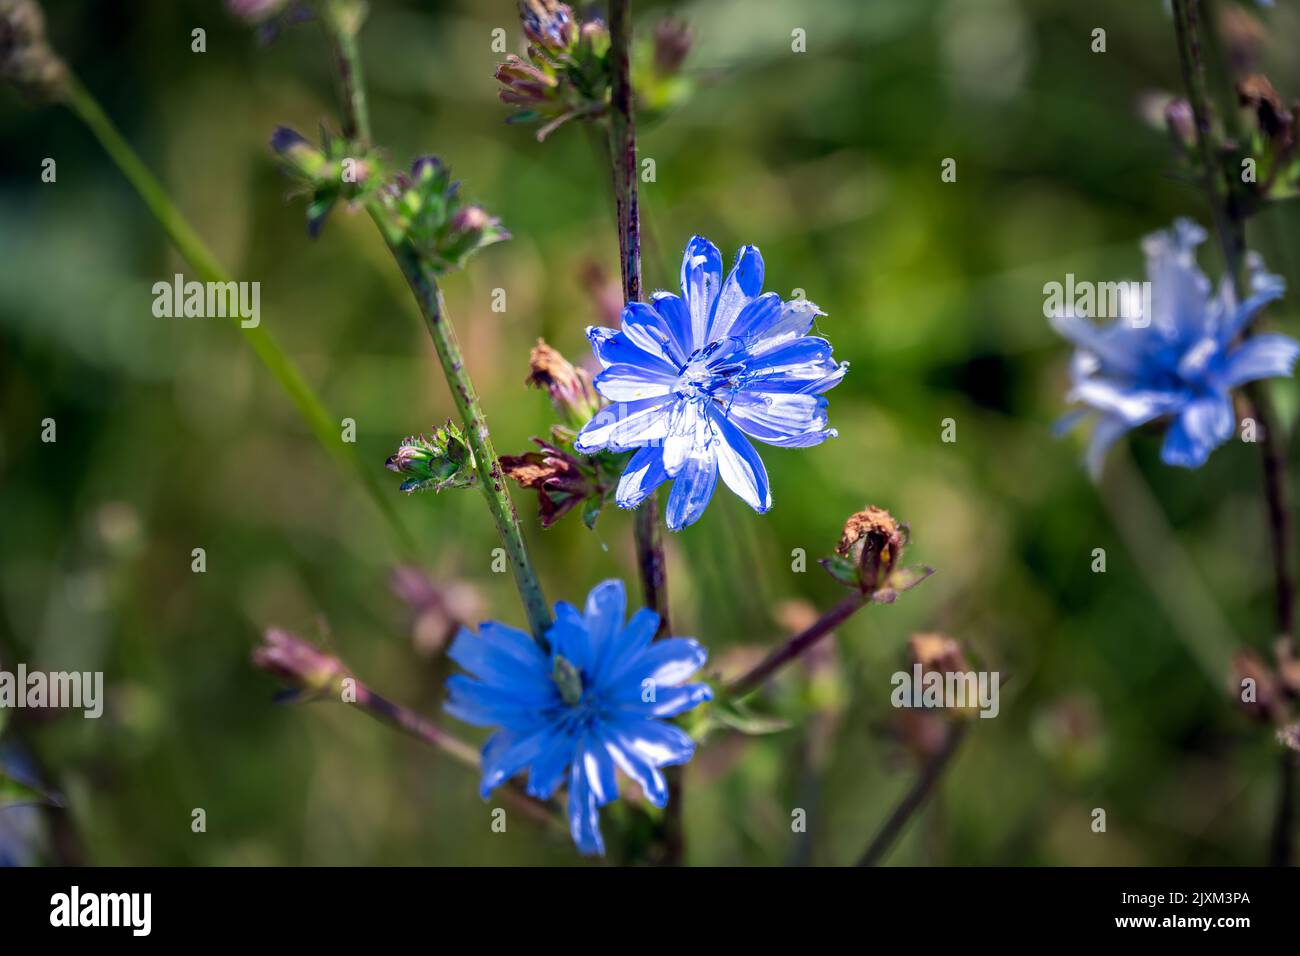 Blue flower of endive or Cichorium endivia L., close up Stock Photo